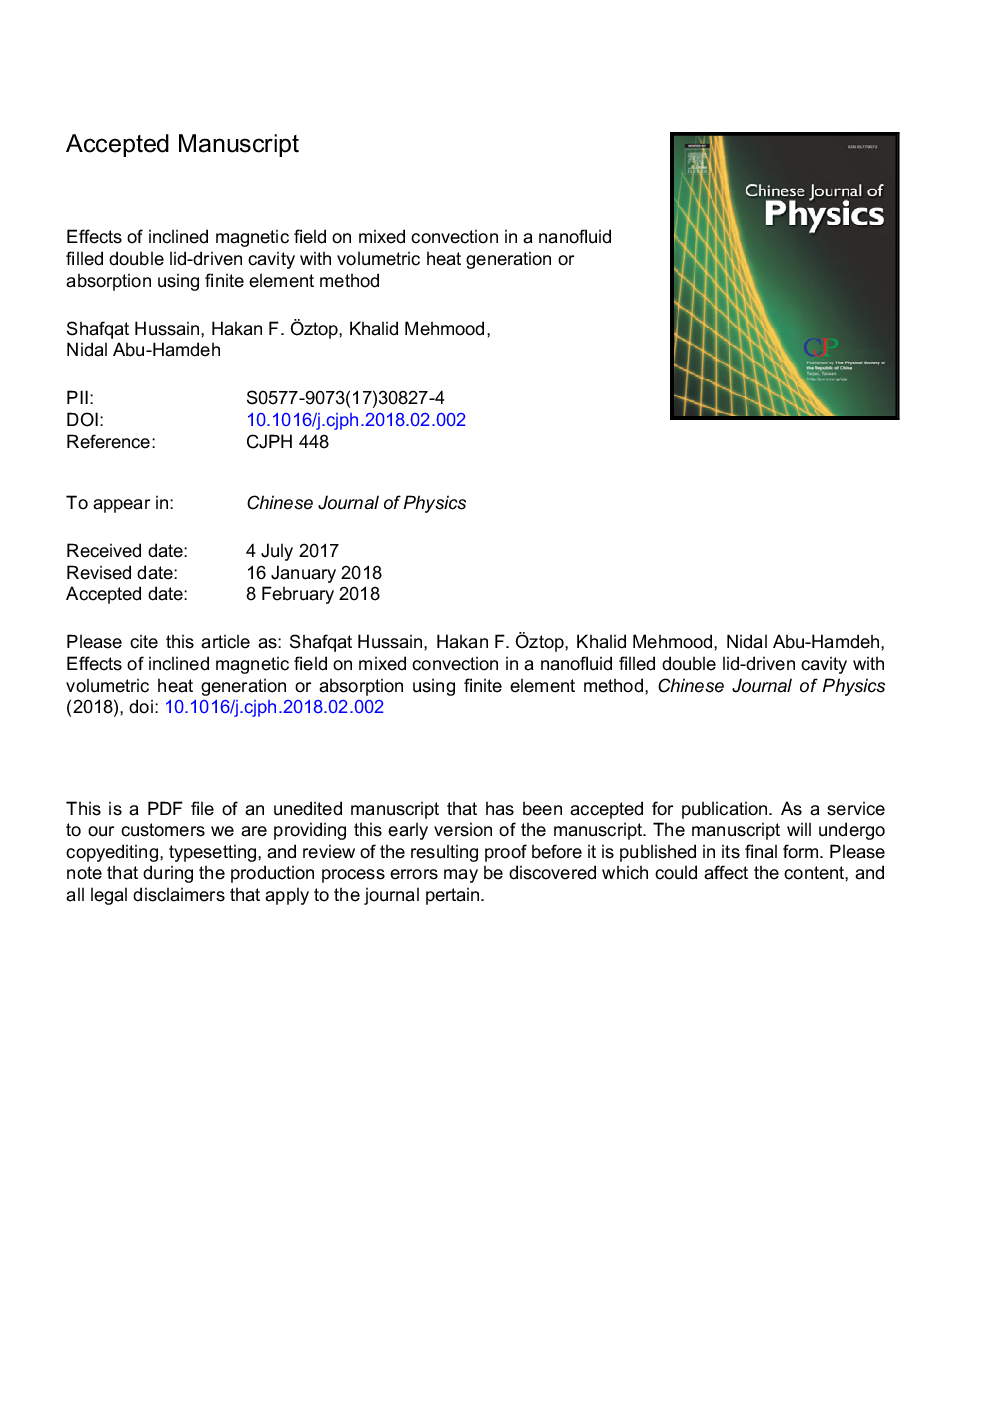 اثر میدان مغناطیسی شیبدار بر روی مخلوط در حفره دو درب با پوشش نانوسیم پر شده با تولید یا جذب حرارت حجمی با استفاده از روش المان محدود 